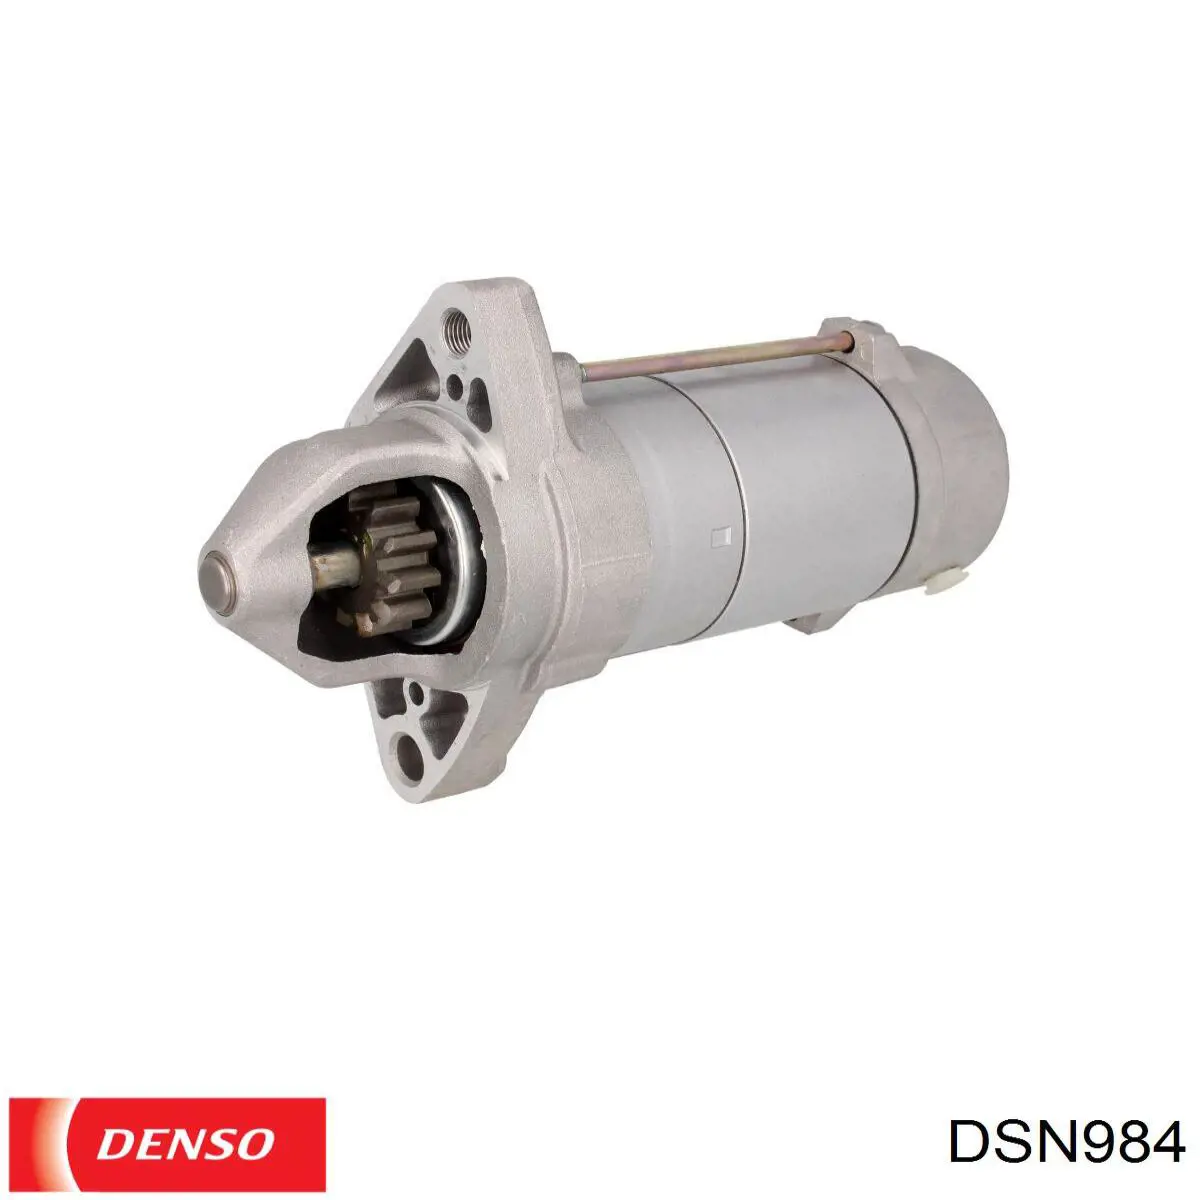 DSN984 Denso motor de arranque